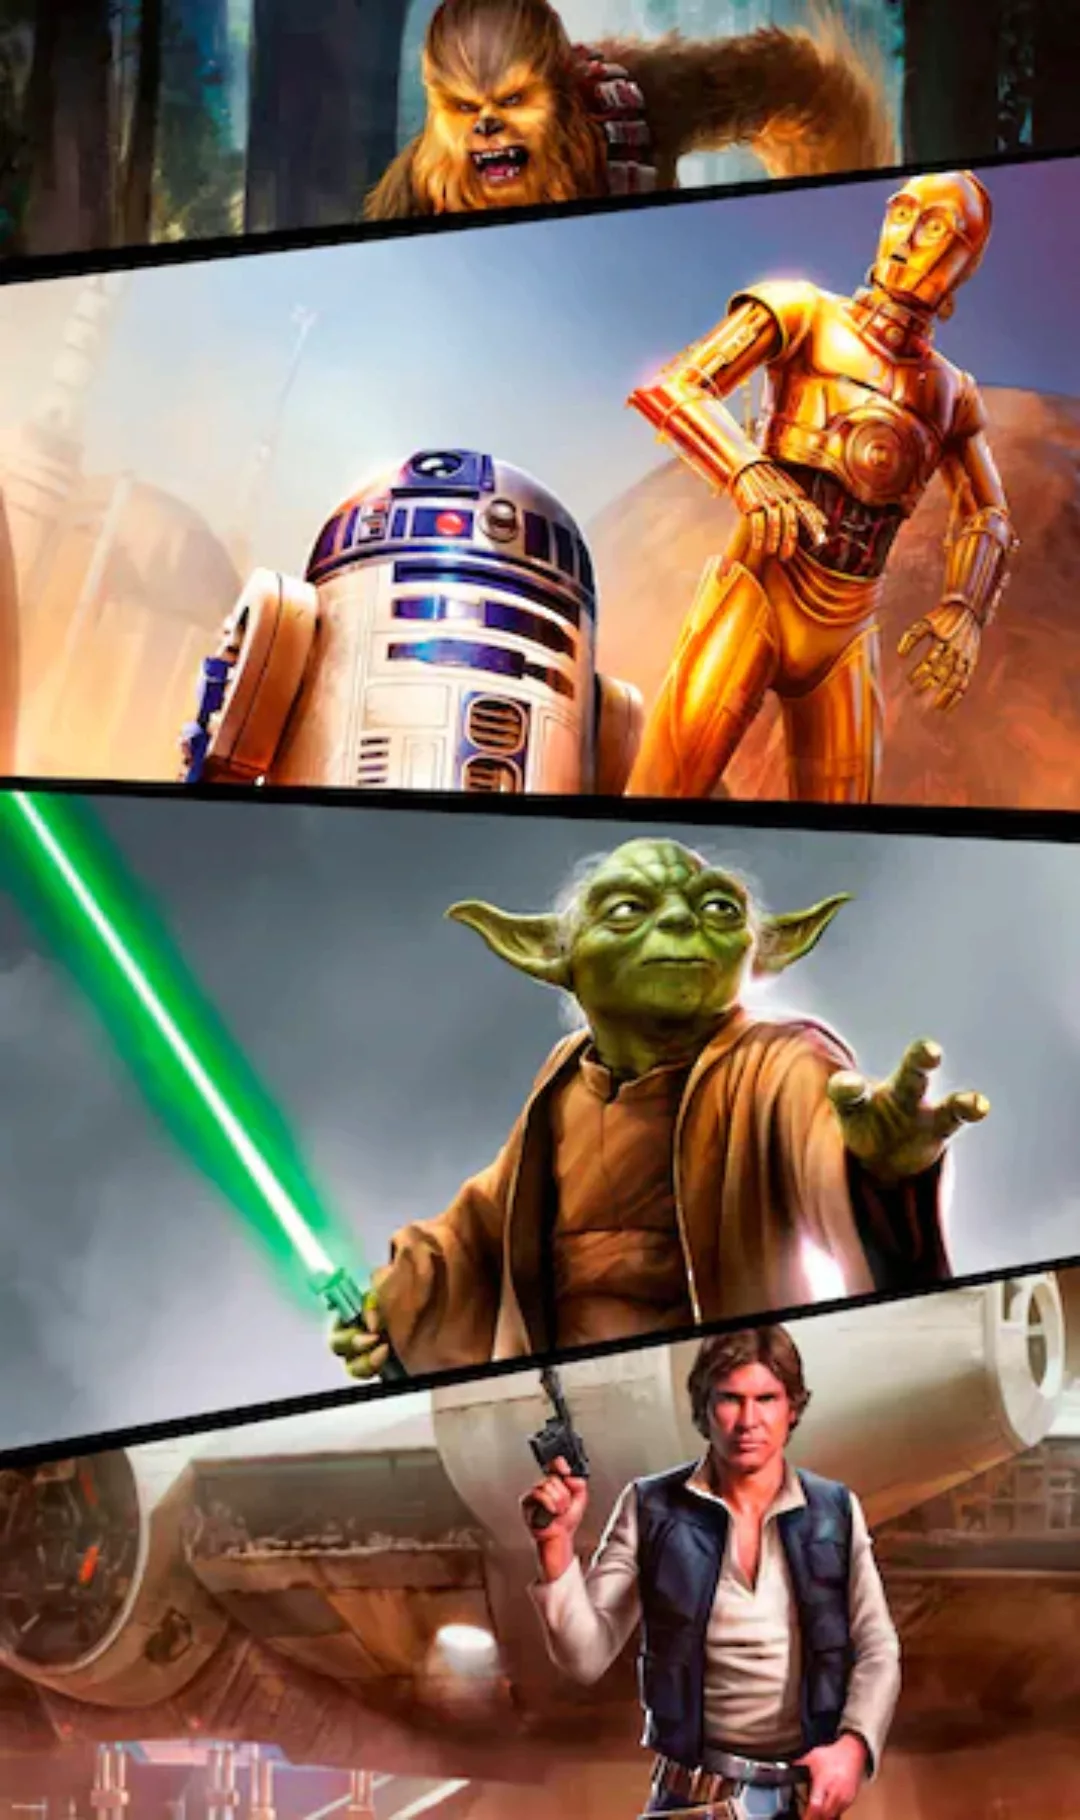 Komar Vliestapete »Star Wars Moments Rebels«, 120x200 cm (Breite x Höhe), V günstig online kaufen